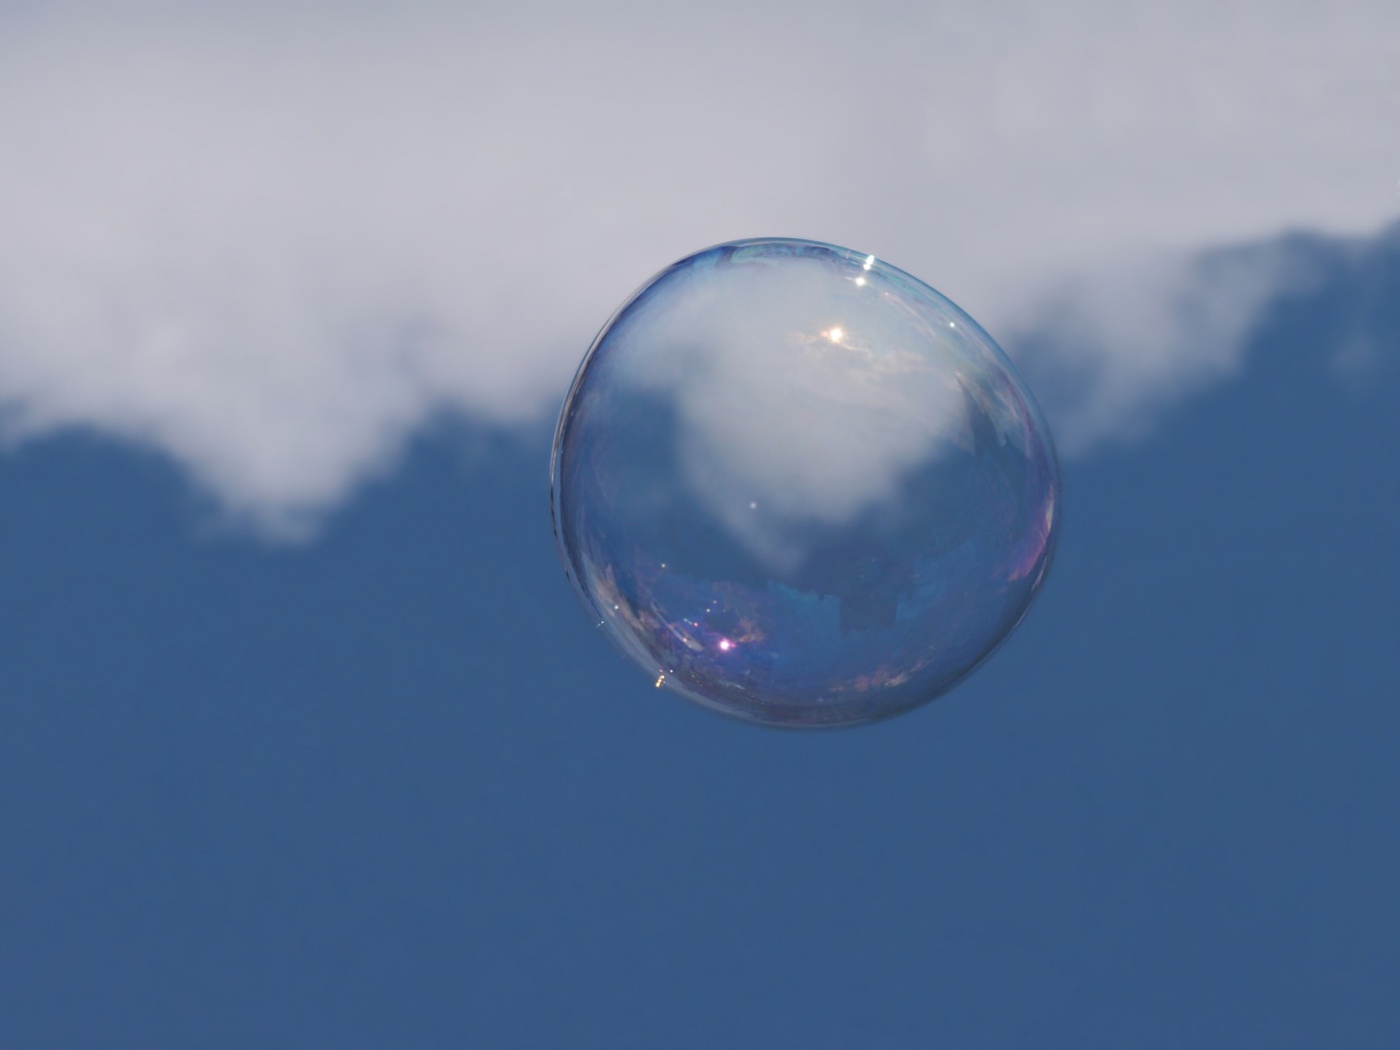 bulle de savon transparente - Comment faire pour obtenir plus clair - Alexandra Kind